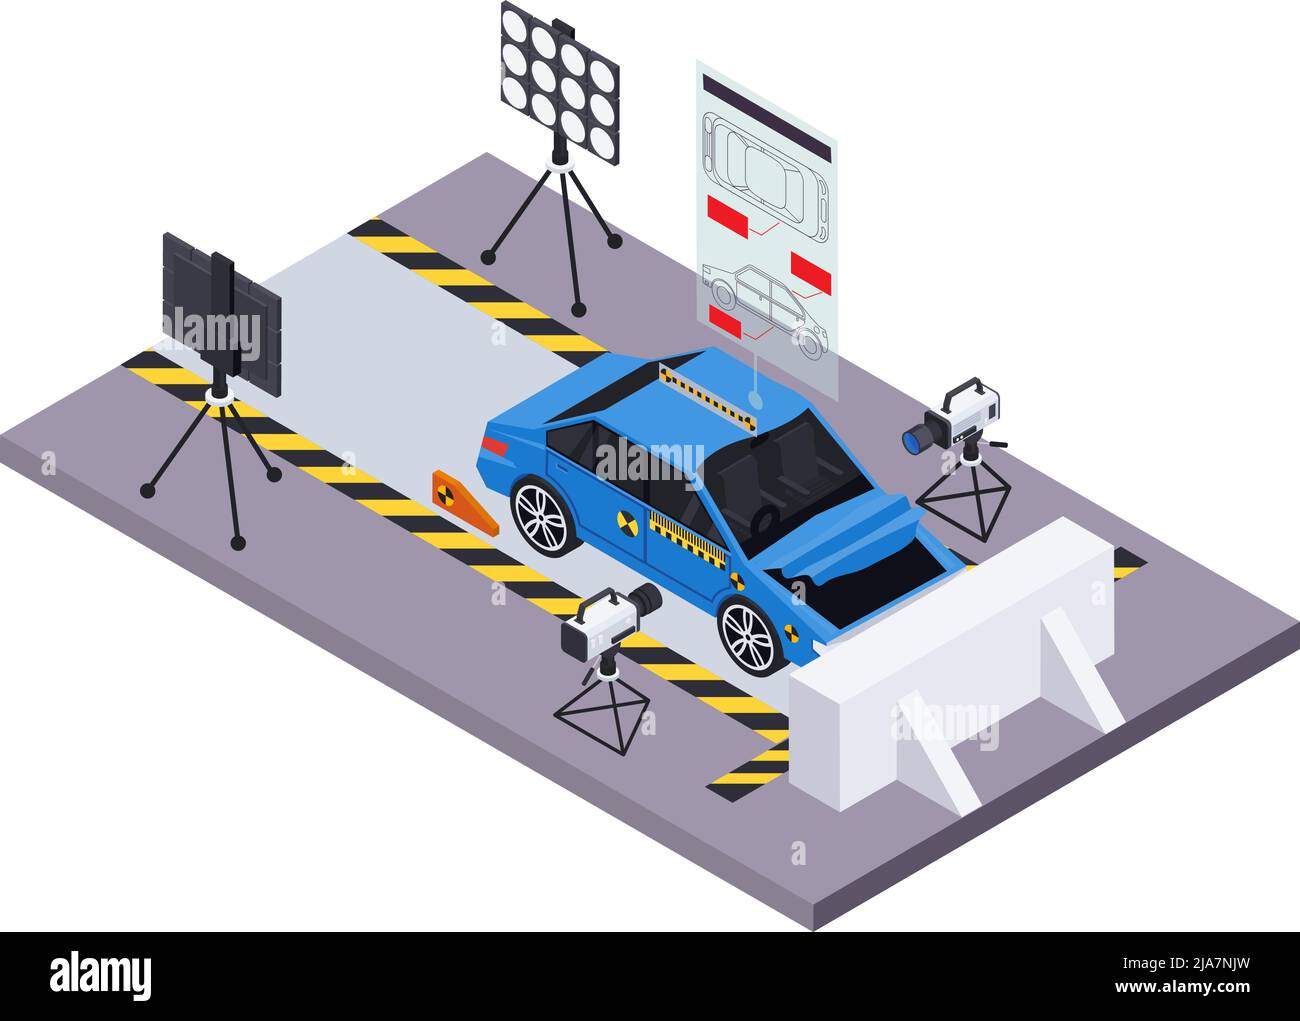 Crash-Test Auto Sicherheit isometrische Zusammensetzung mit Teststrecke Landschaft Beleuchtung Ausrüstung Kameras und Eintauchen Automobil-Vektor-Illustration Stock Vektor